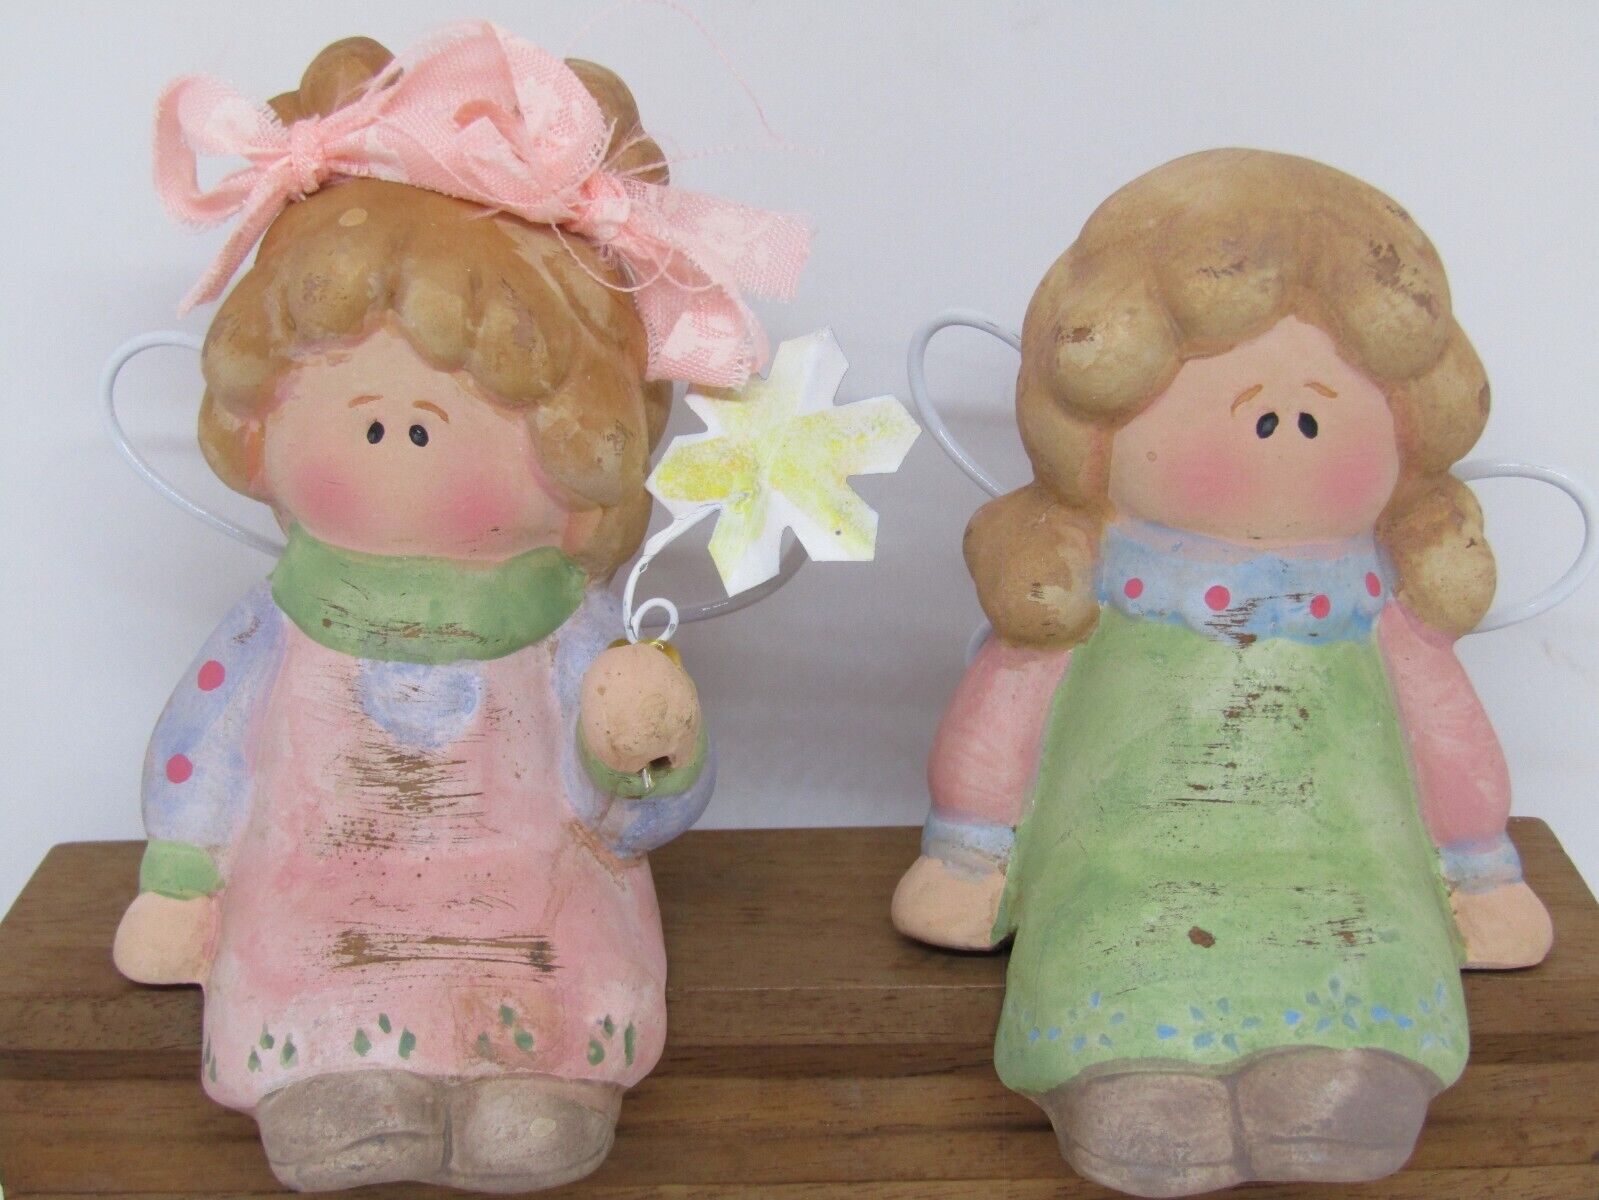 Vintage Hand-Painted Ceramic Shelf-Sitter Angels. Set of 2.